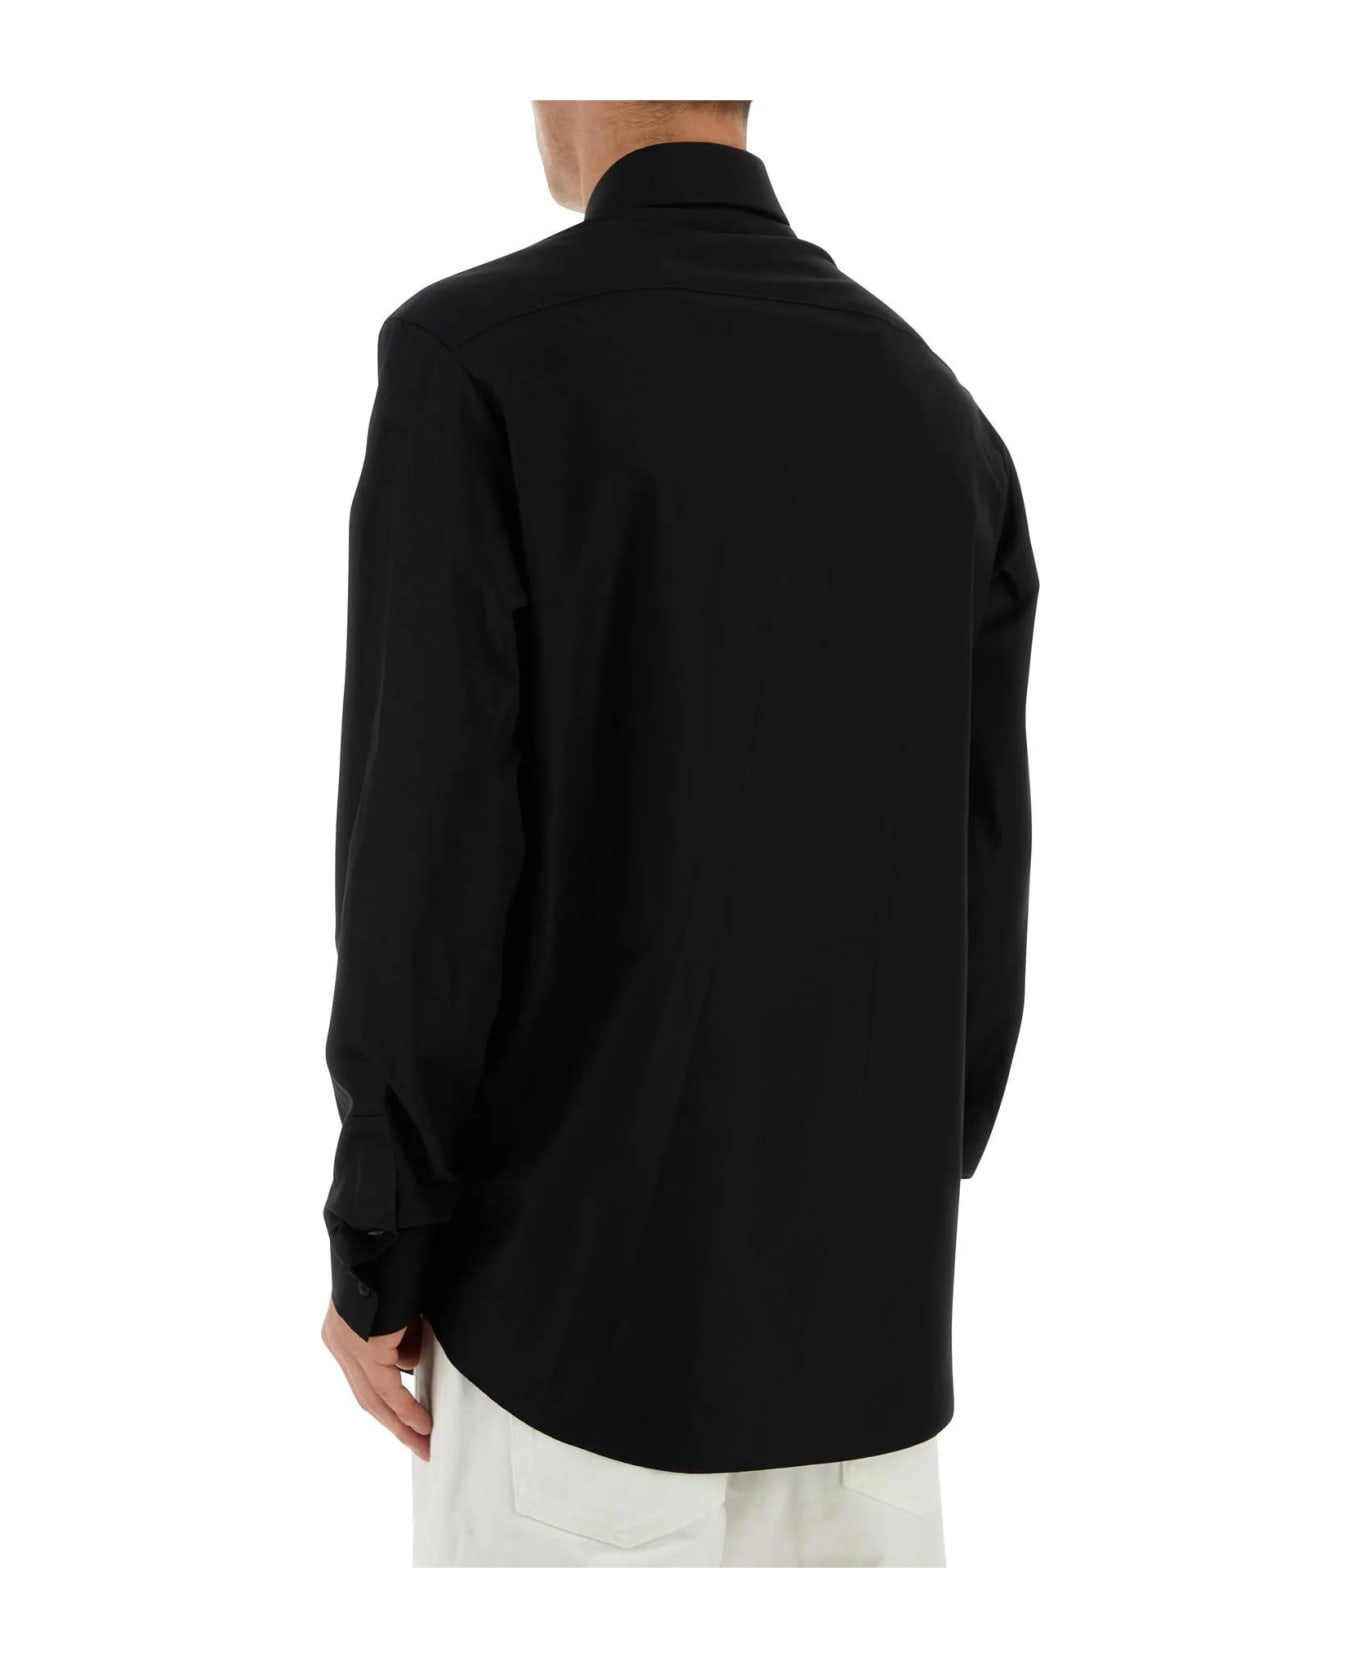 Balmain Black Poplin Shirt - 0PANOIR シャツ